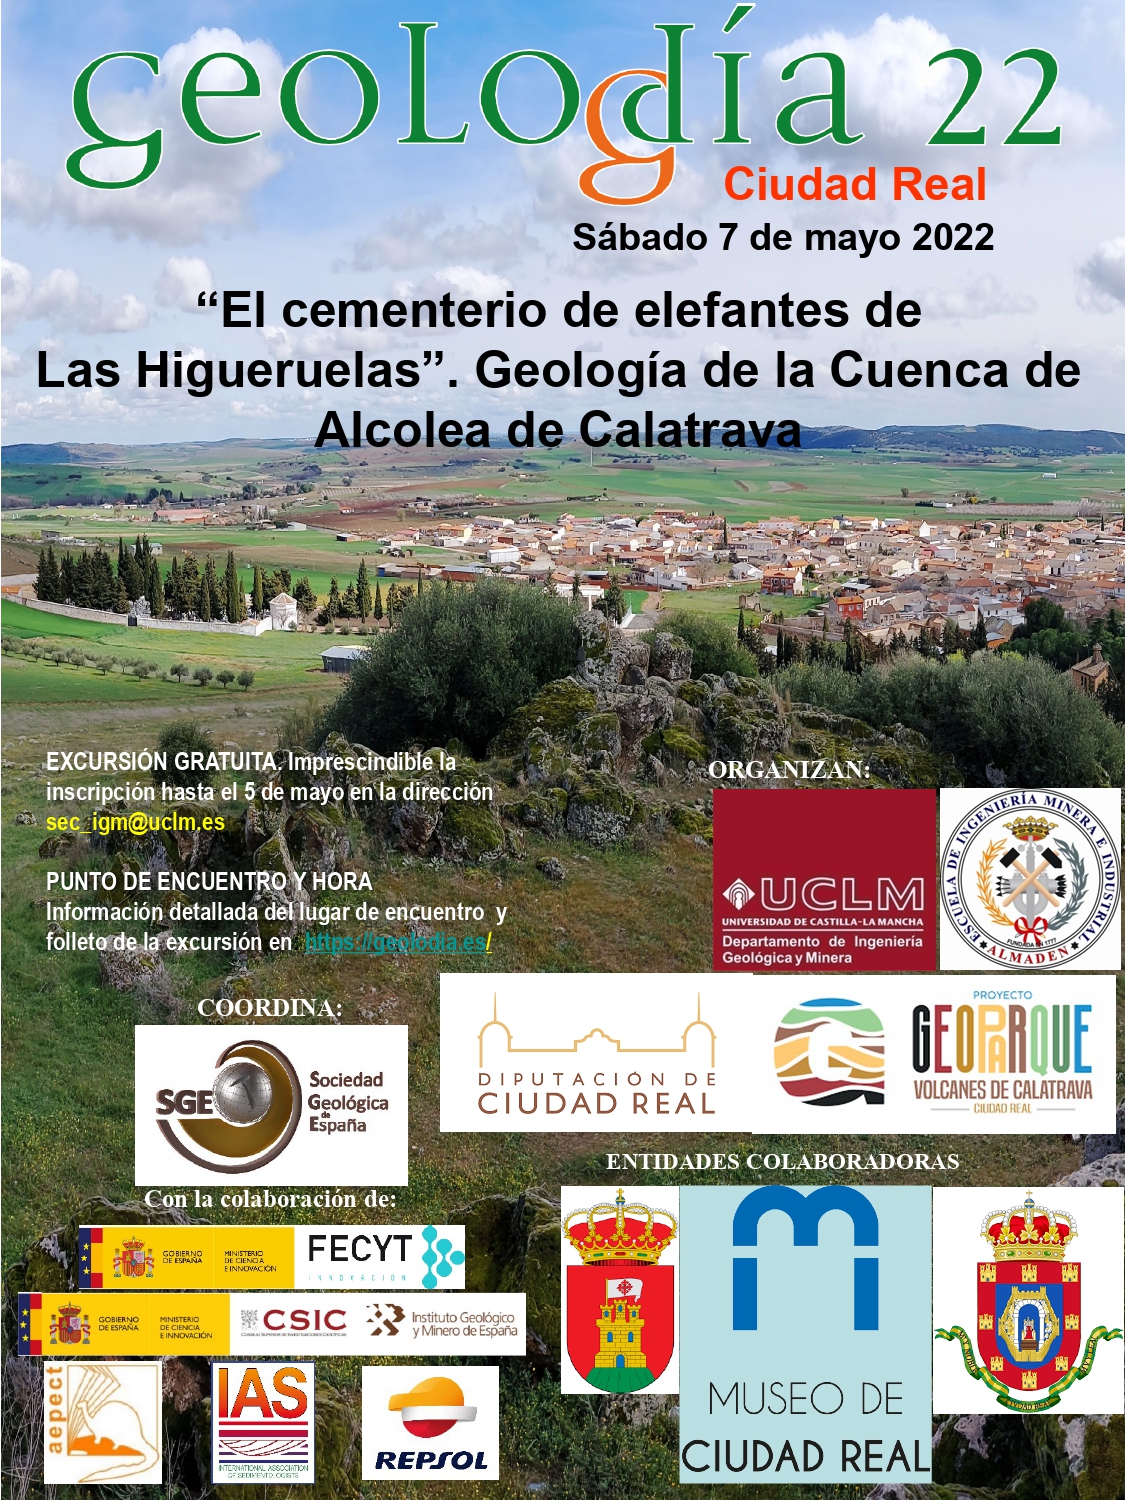 "El cementerio de elefantes de Las Higueruelas". Geología de la Cuenca de Alcolea de Calatrava.